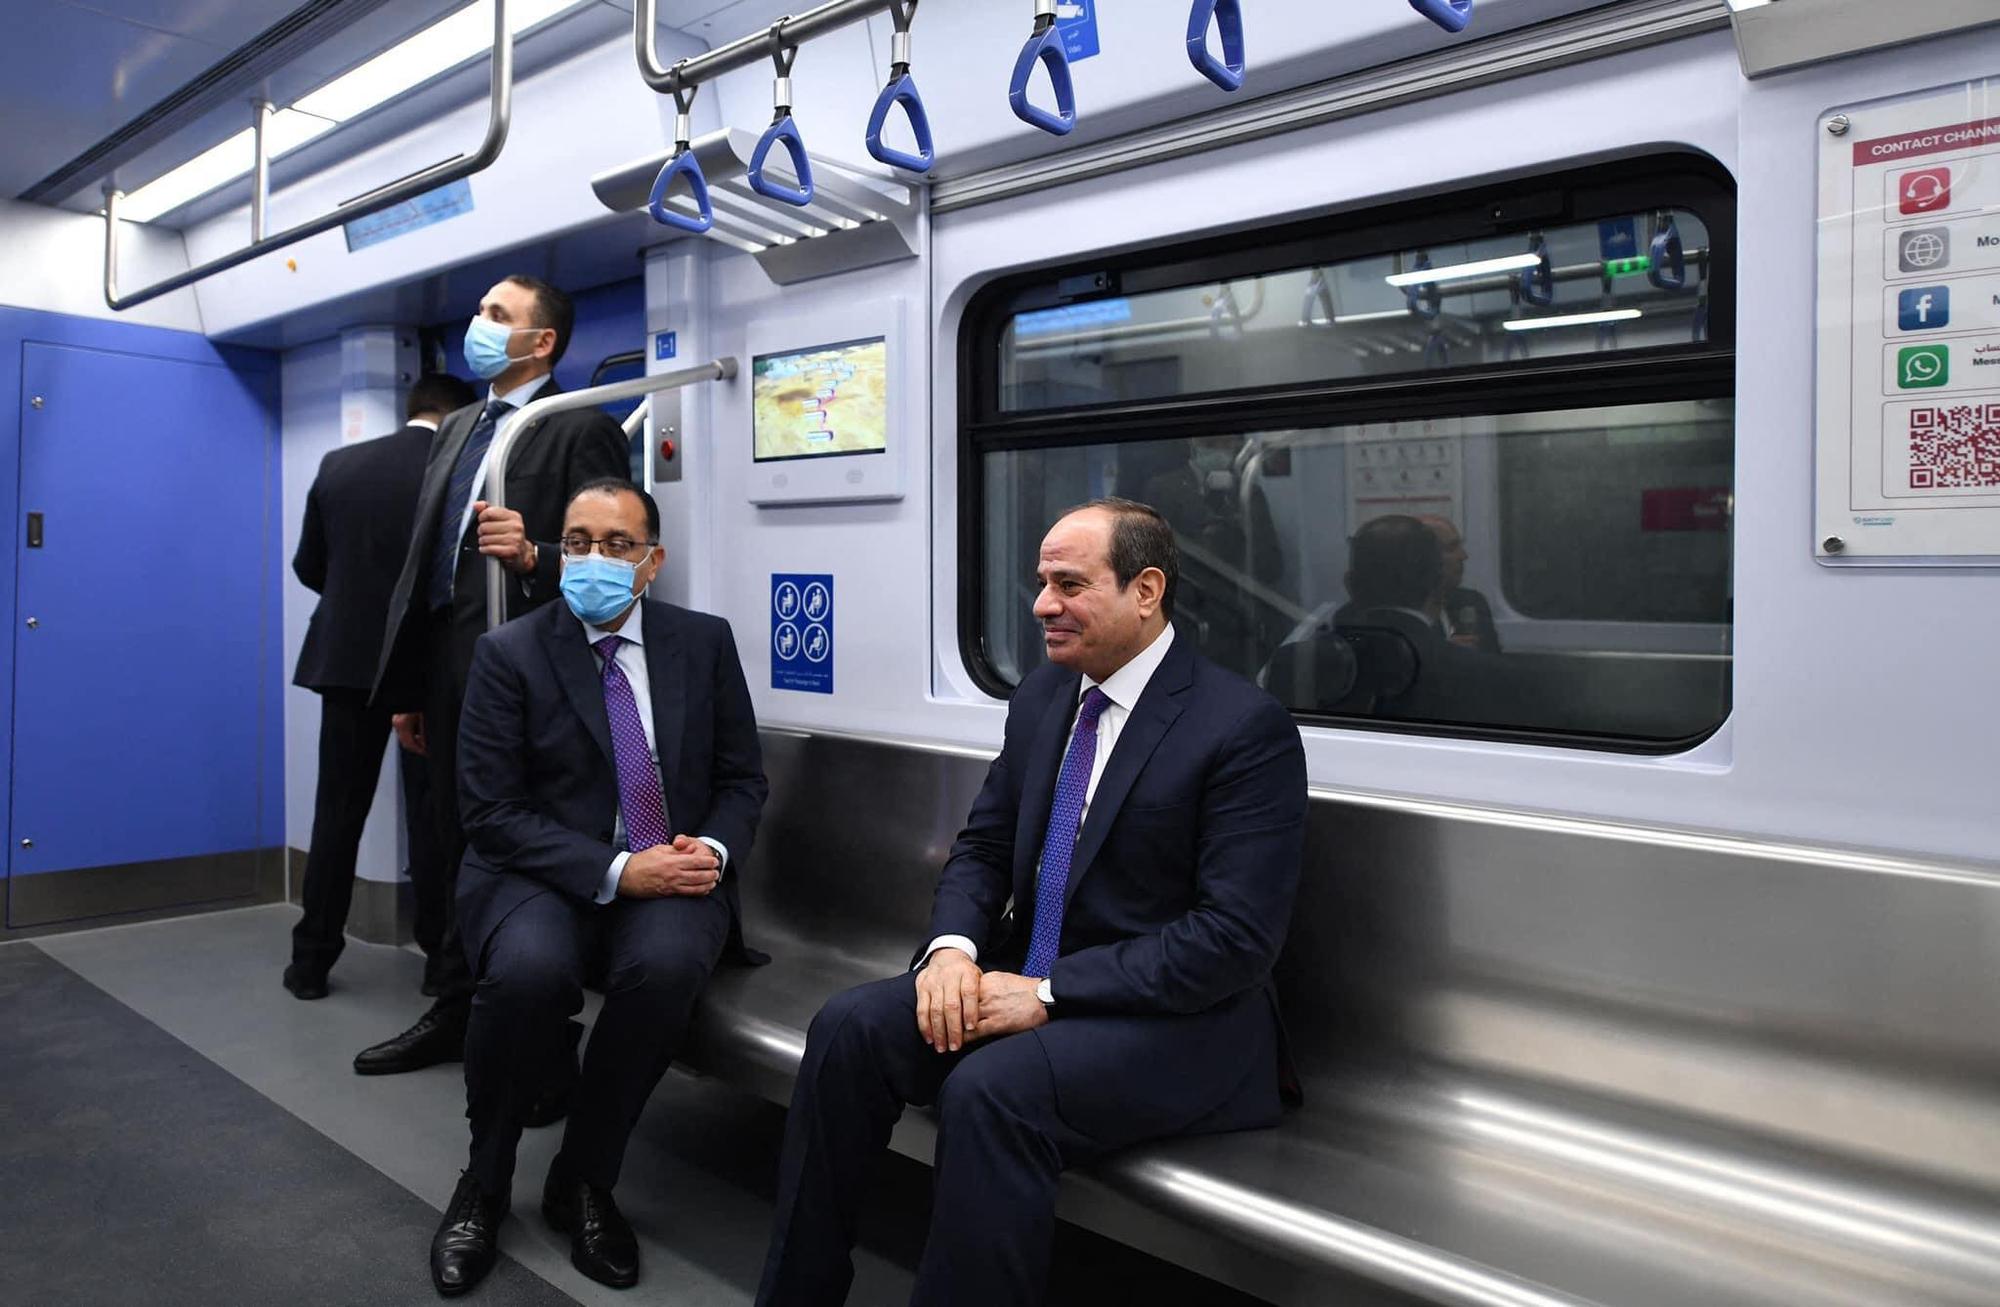 Le président égyptien Abdel Fattah al-Sissi et le Premier ministre égyptien Moustafa Madbouli inaugurent au Caire la nouvelle ligne de métro construite en partenariat avec des sociétés chinoises, le 3 juillet 2022. [Xinhua/afp - Présidence égyptienne]